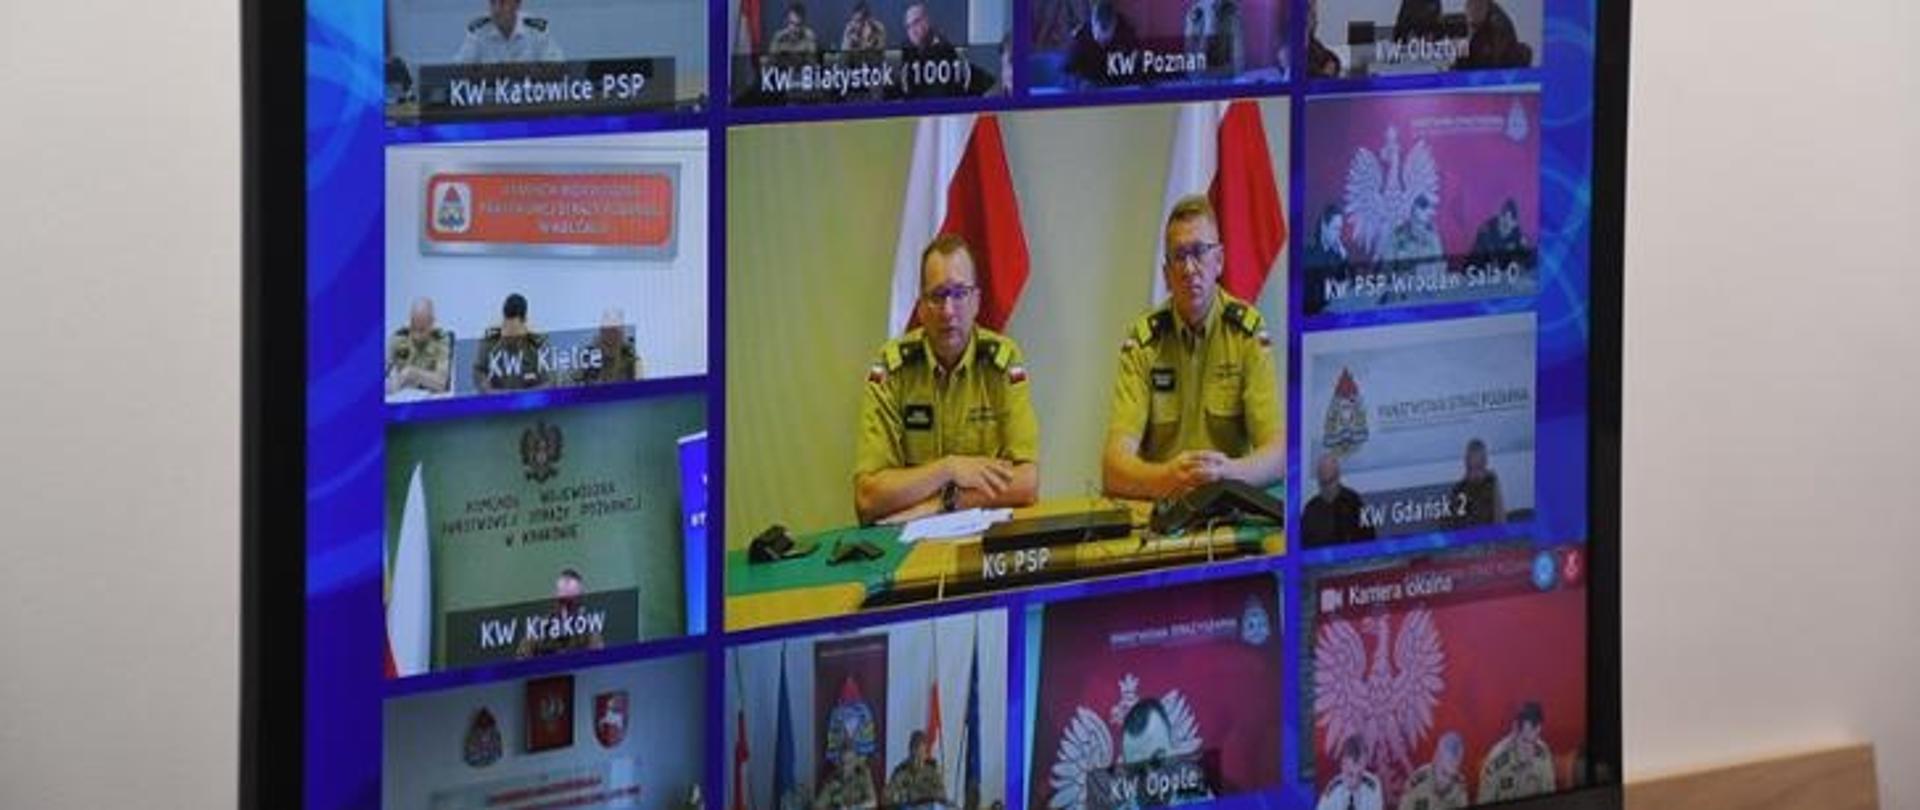 Na ekranie widoczni są uczestnicy wideokonferencji - kadra kierownicza Państwowej Straży Pożarnej.